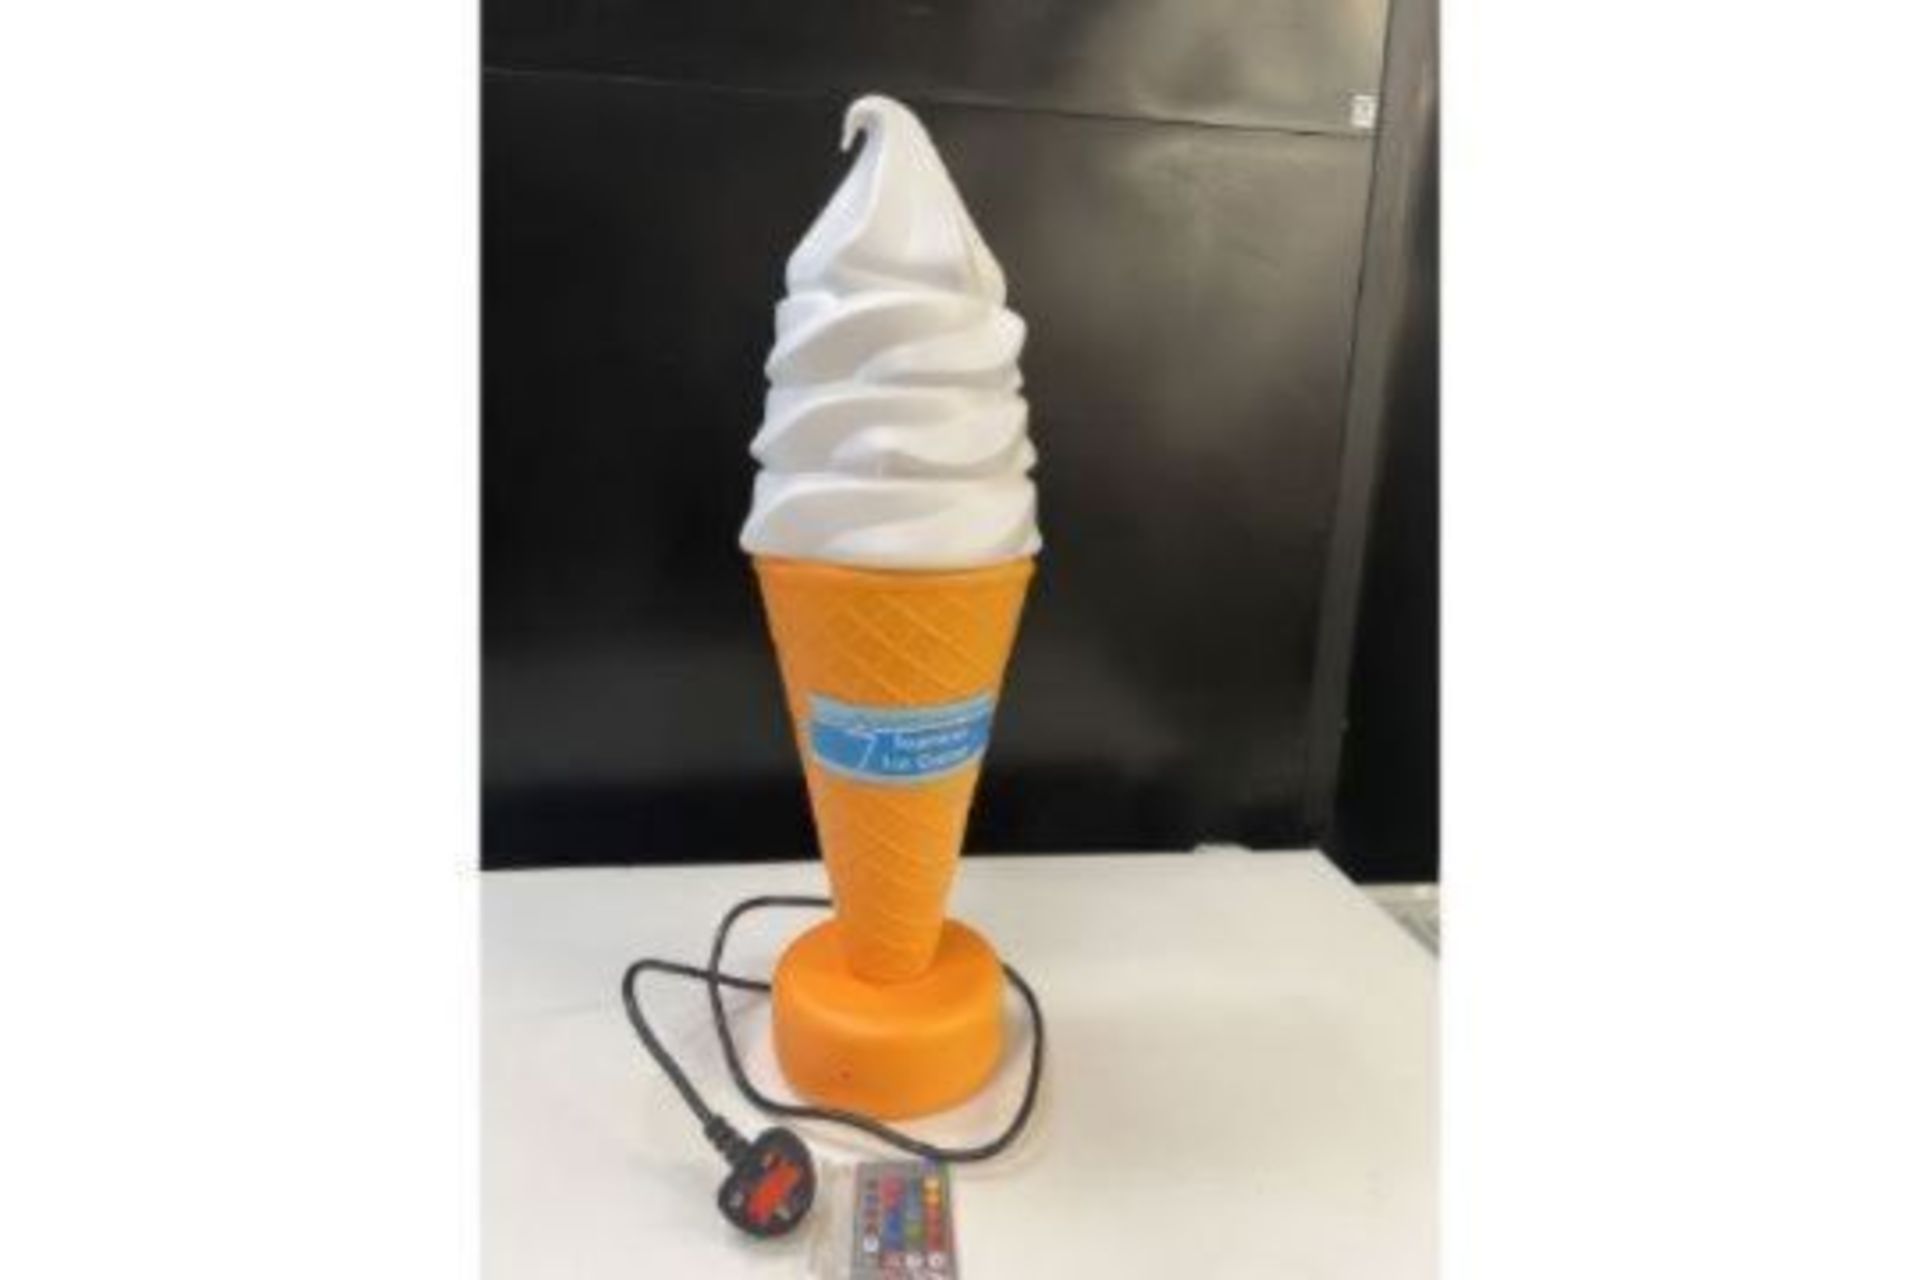 Illuminated ice cream cone display. - Bild 2 aus 9